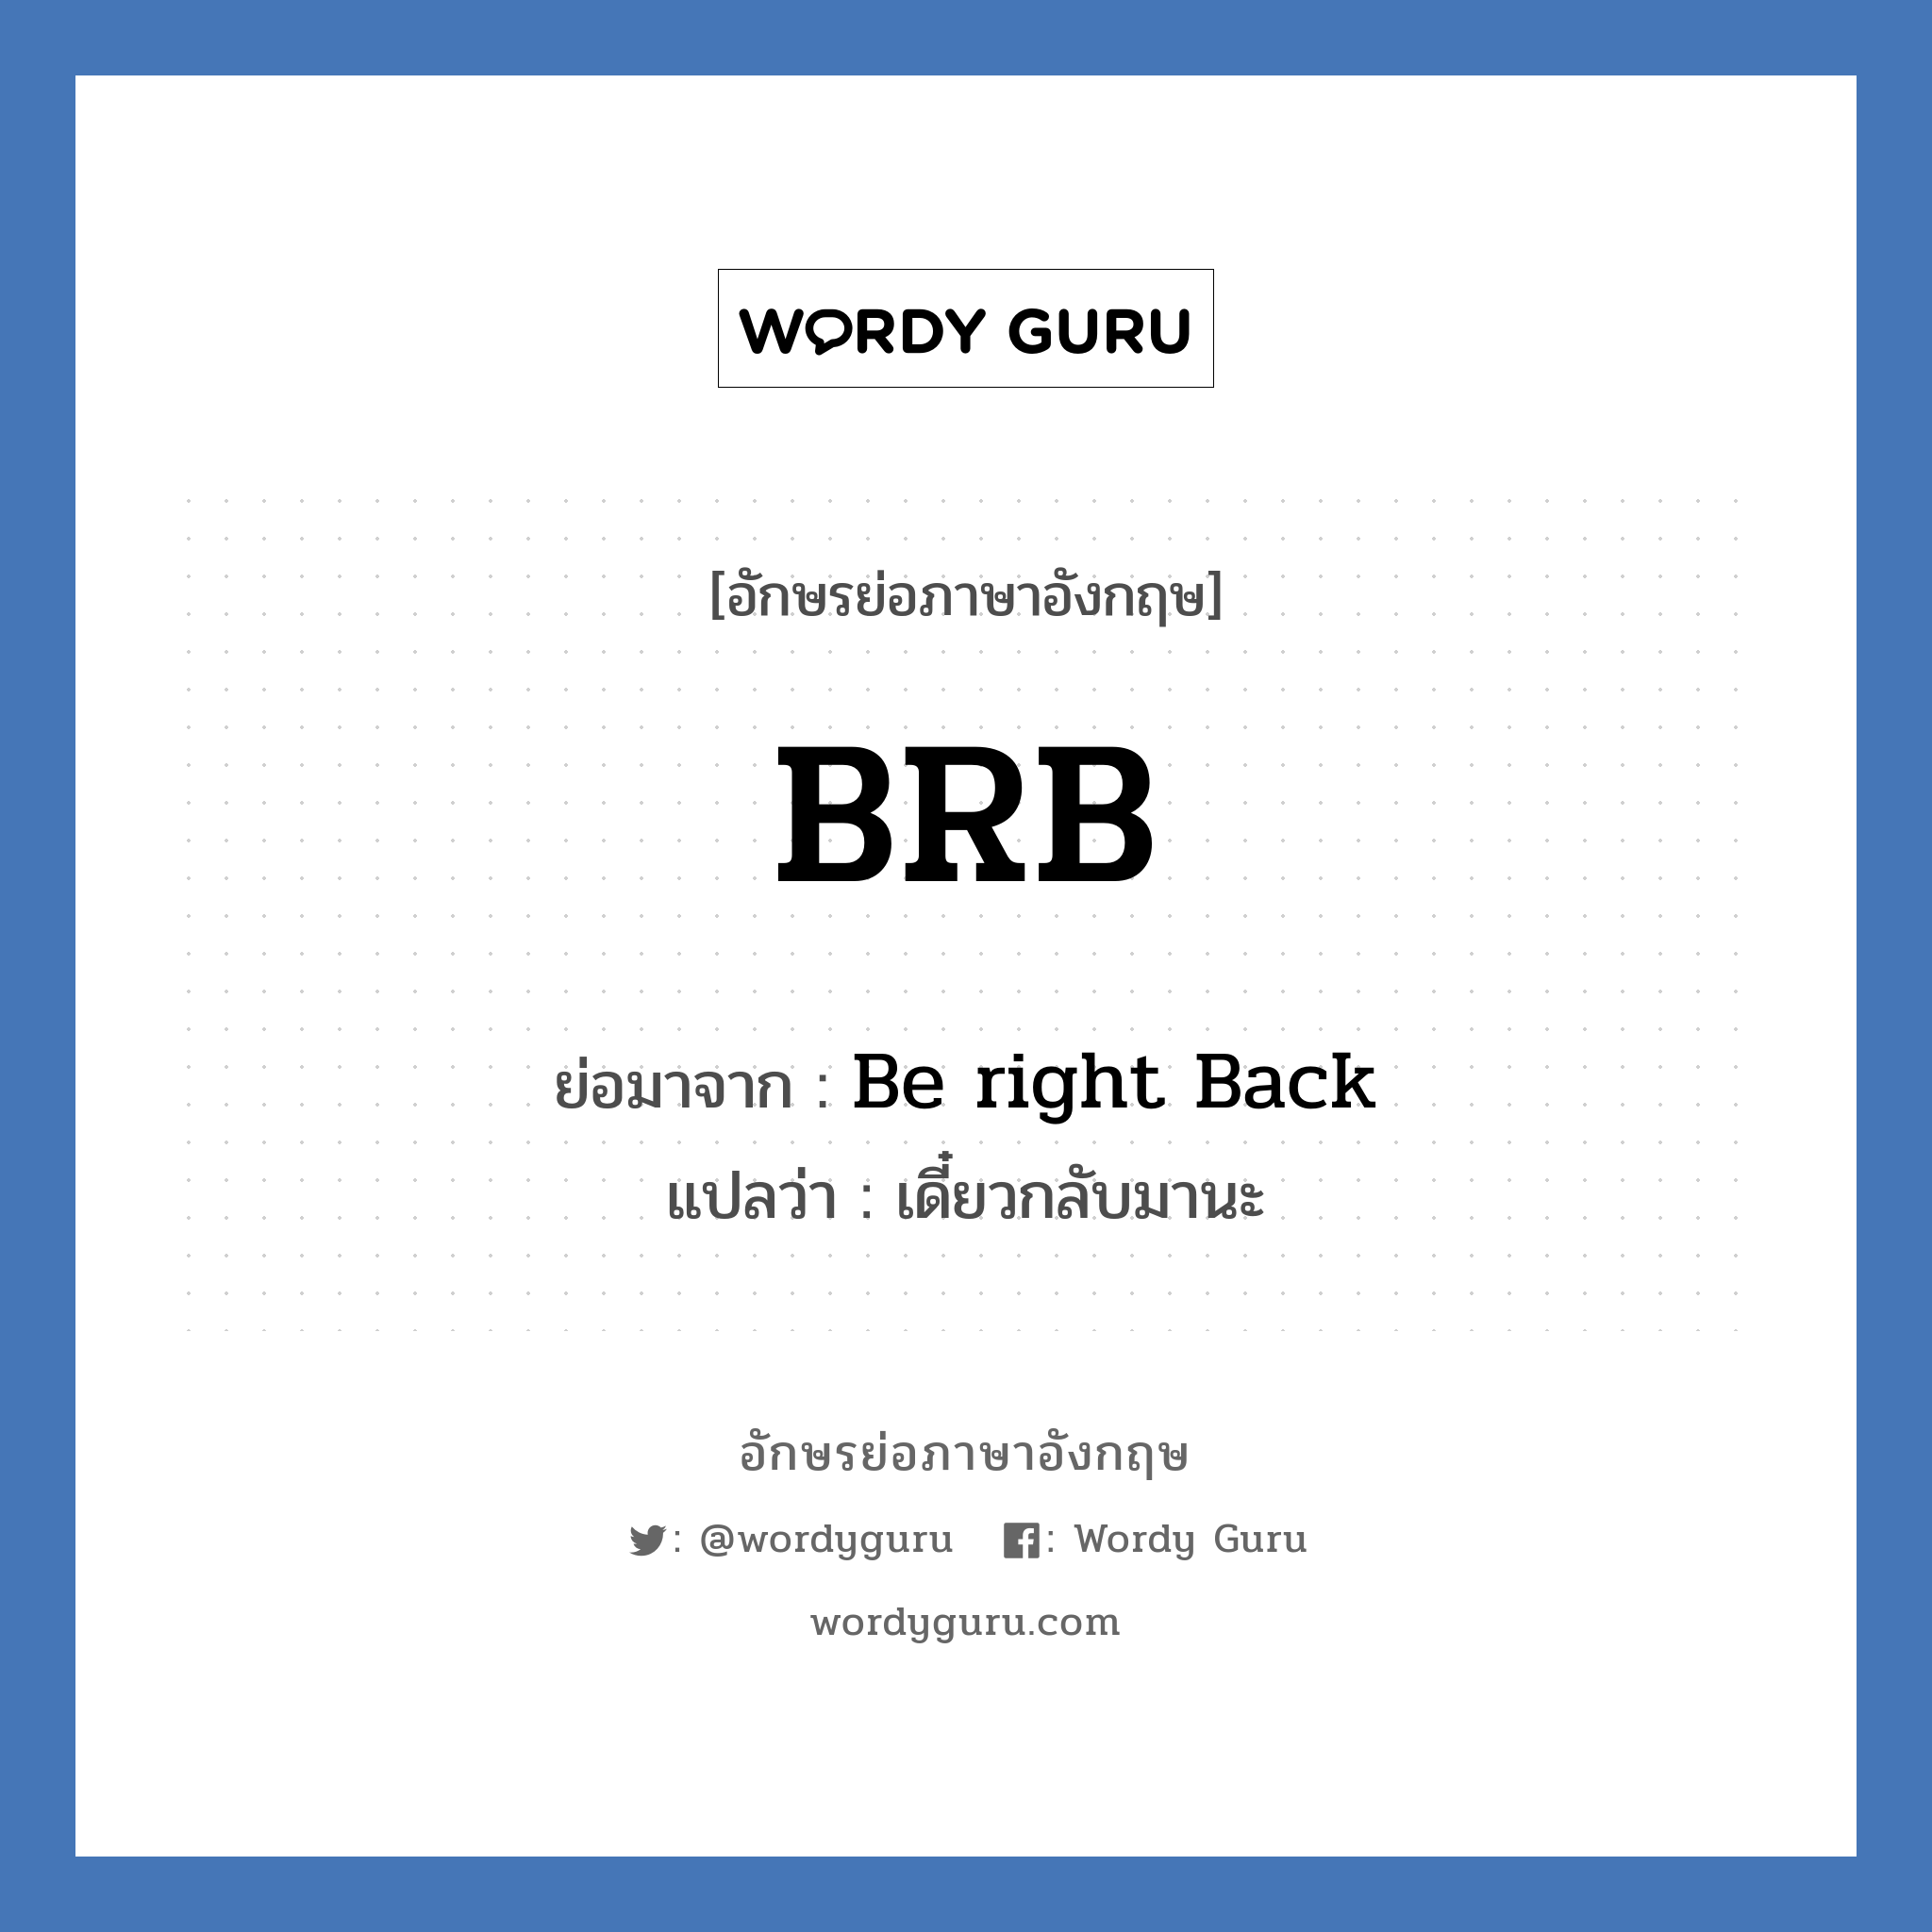 B-R-B ย่อมาจาก? แปลว่า?, อักษรย่อภาษาอังกฤษ BRB ย่อมาจาก Be right Back แปลว่า เดี๋ยวกลับมานะ